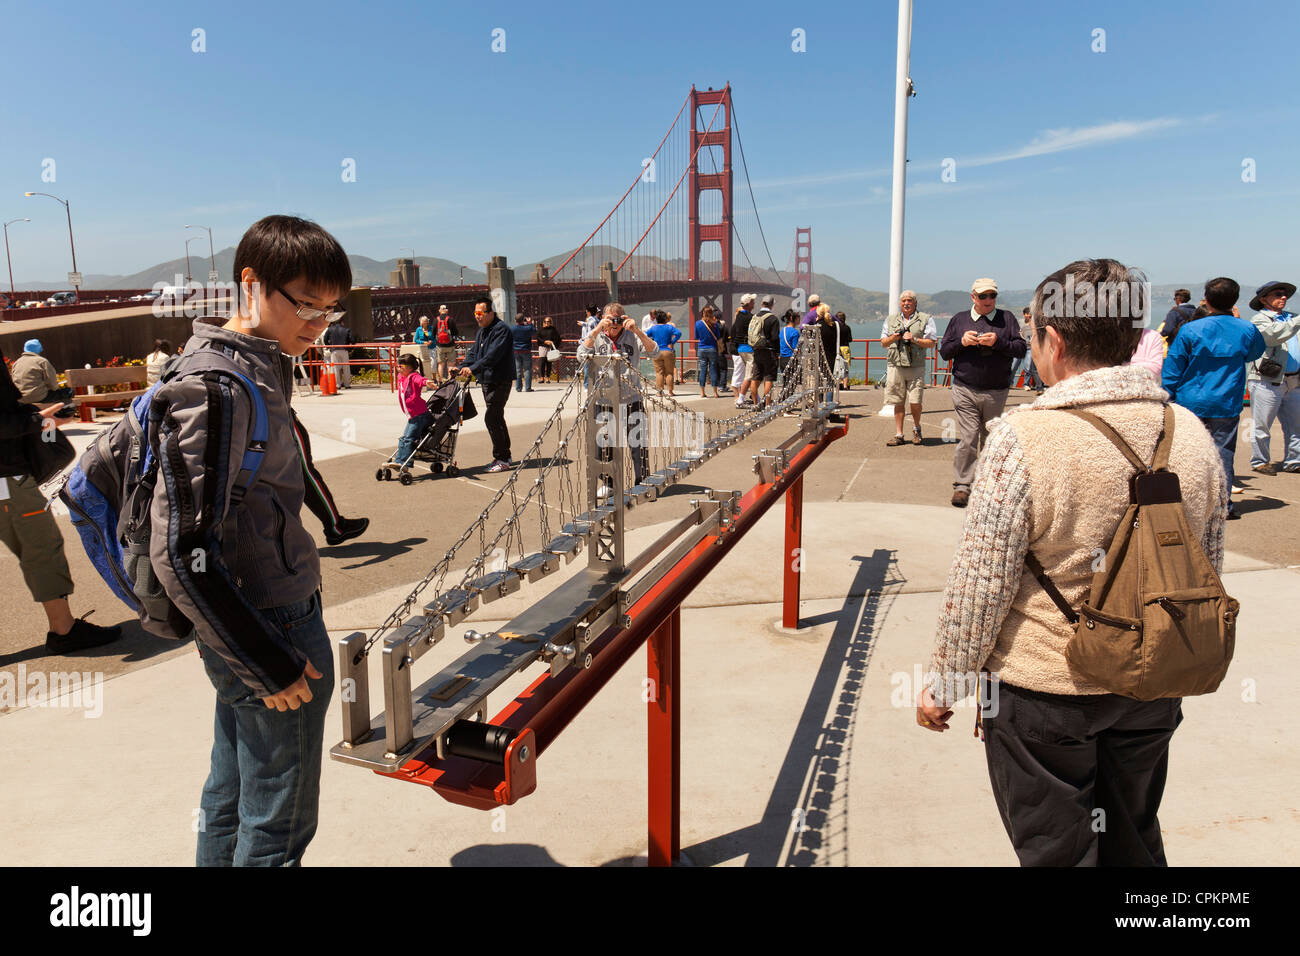 Les touristes au San Francisco Golden Gate Bridge Banque D'Images